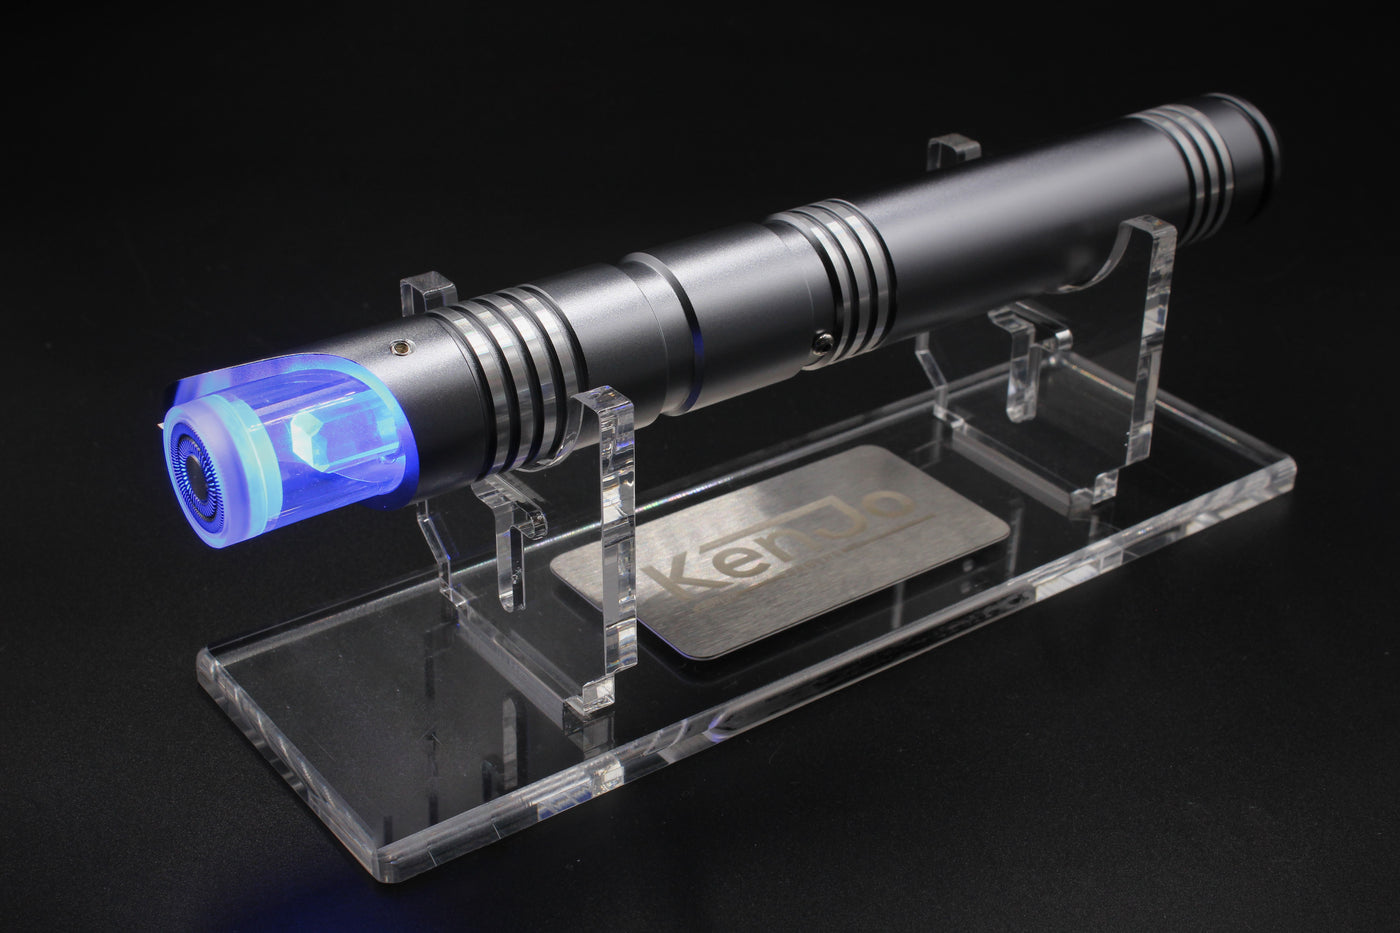 Kyber plug - KenJo Sabers - Star Wars Lightsaber replica Jedi Sith - Best sabershop Europe - Nederland light sabers kopen -